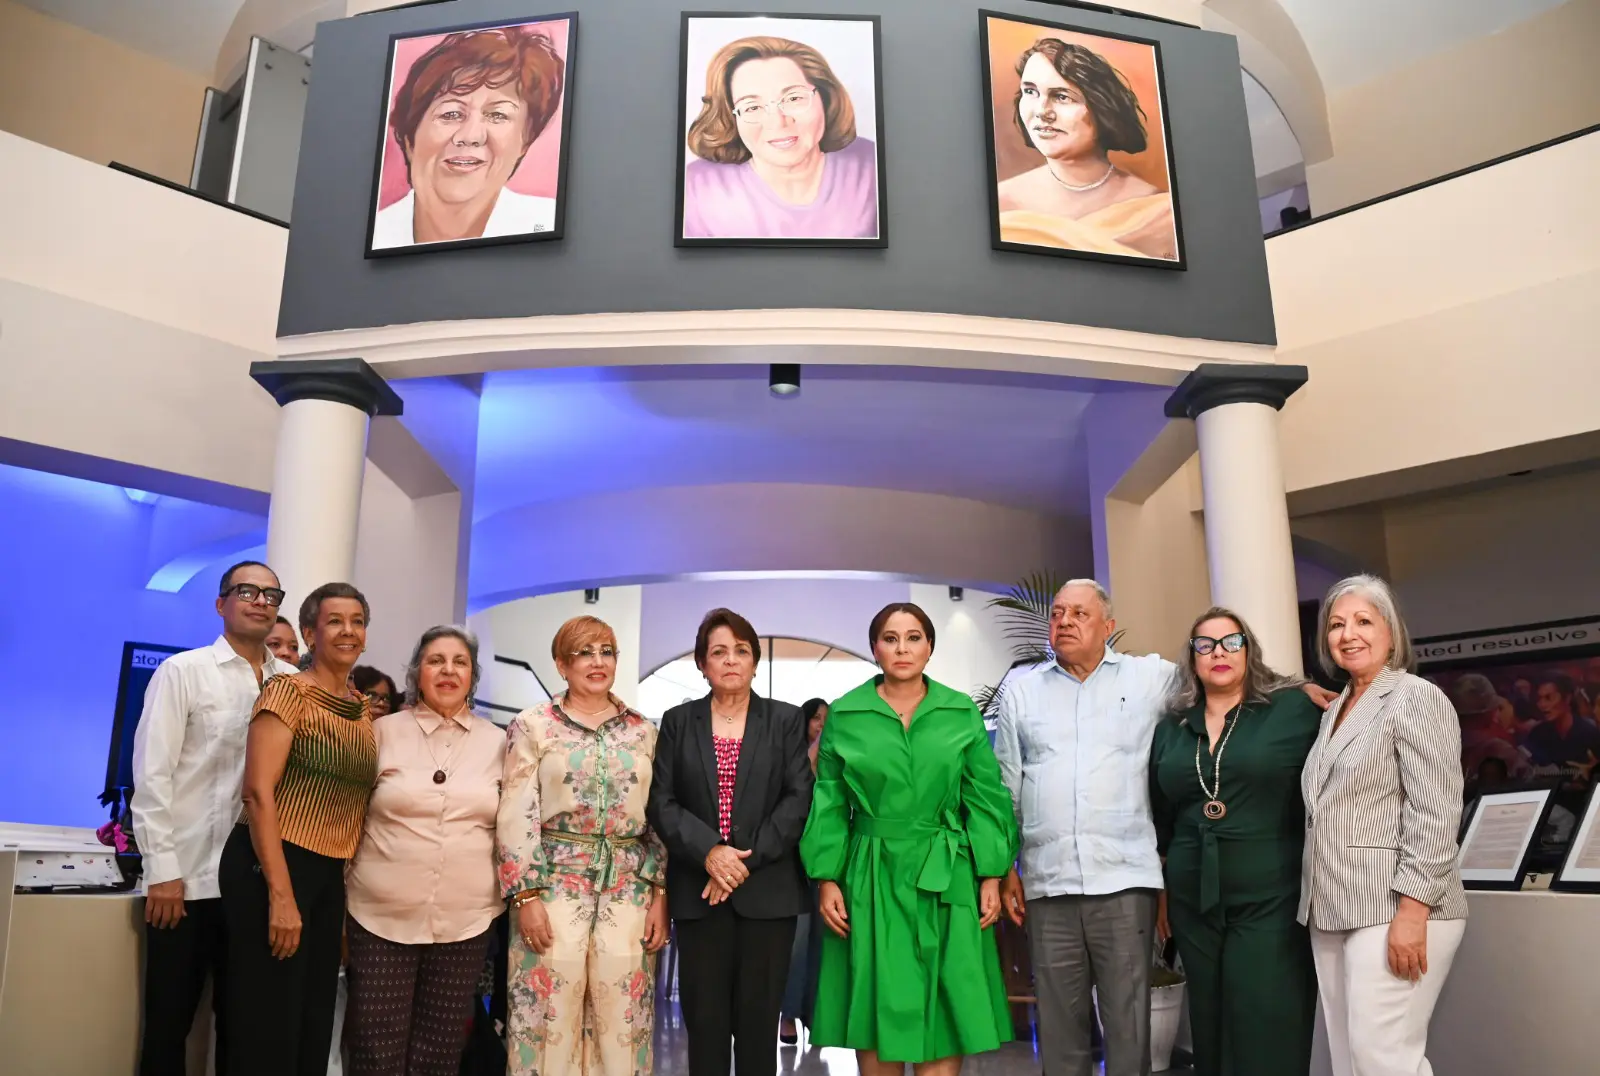 Ministerio de la Mujer devela los retratos de Abigail Mejía, Gladys Gutiérrez y Magaly Pineda en la Galería de la Mujer Dominicana “María Trinidad Sánchez” (foto: fuente externa)